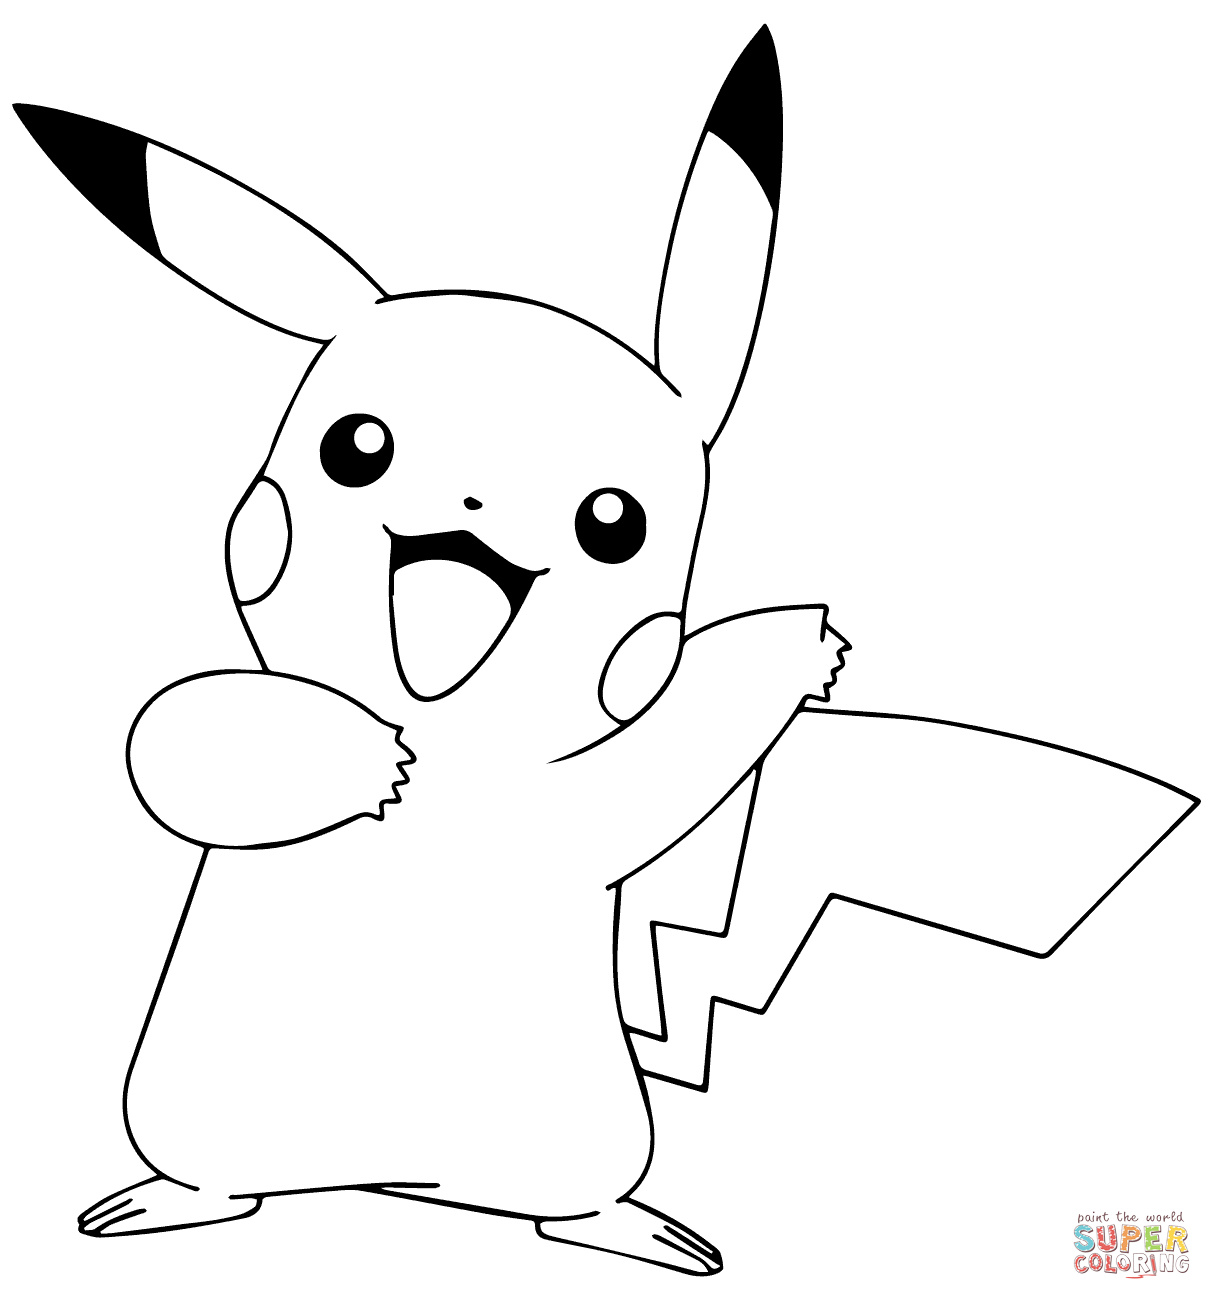 pikachu from pokemon go